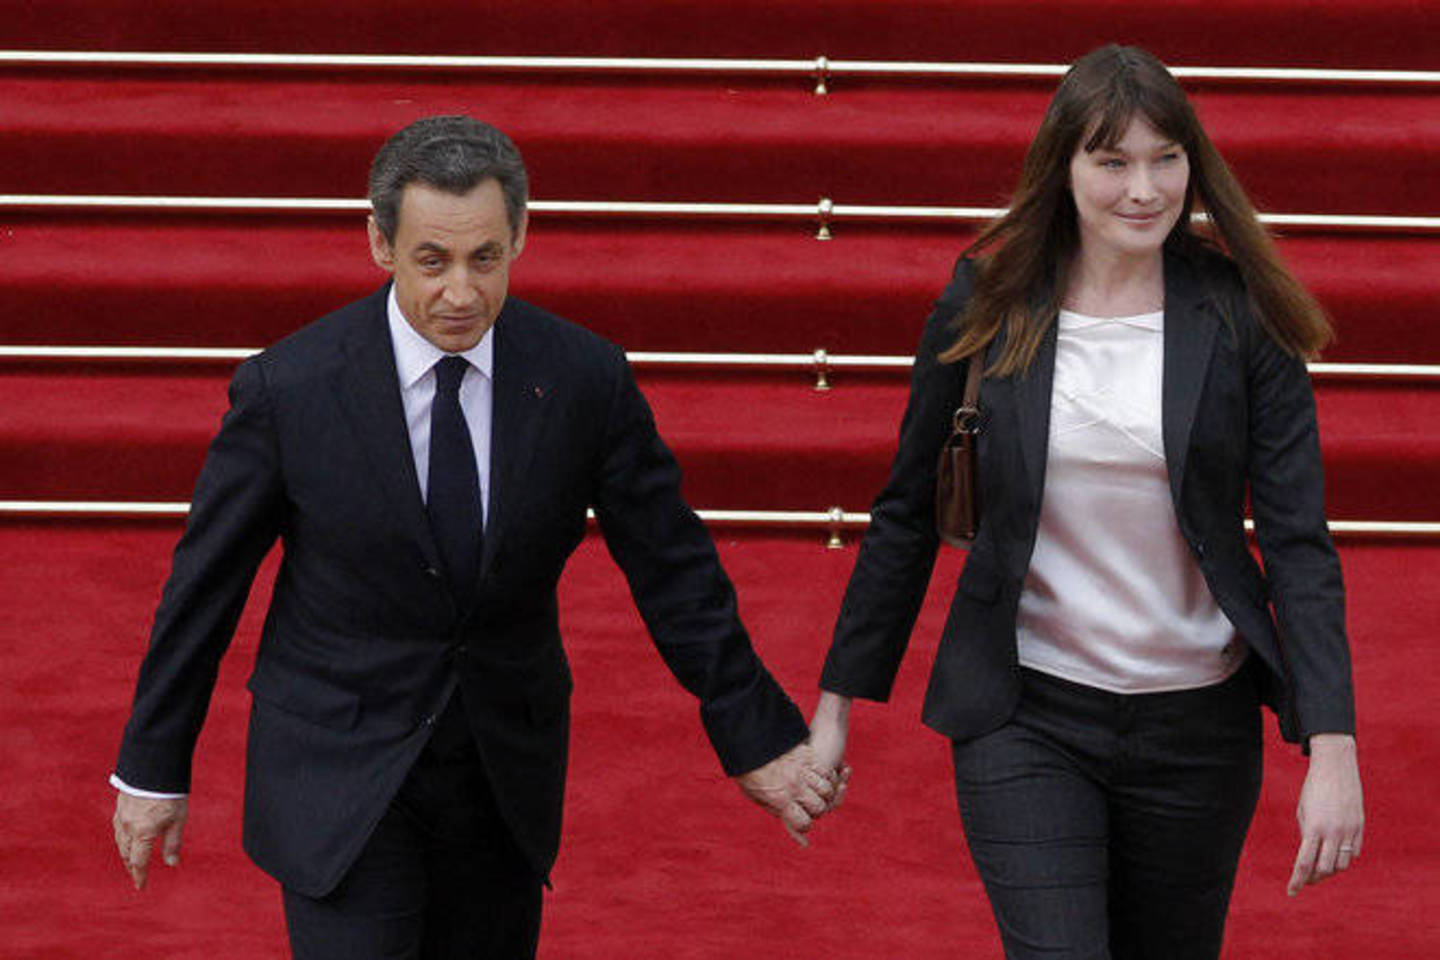 Sutuoktiniai Sarkozy siekia uždrausti slapta padarytus įrašus.<br>AP nuotr.